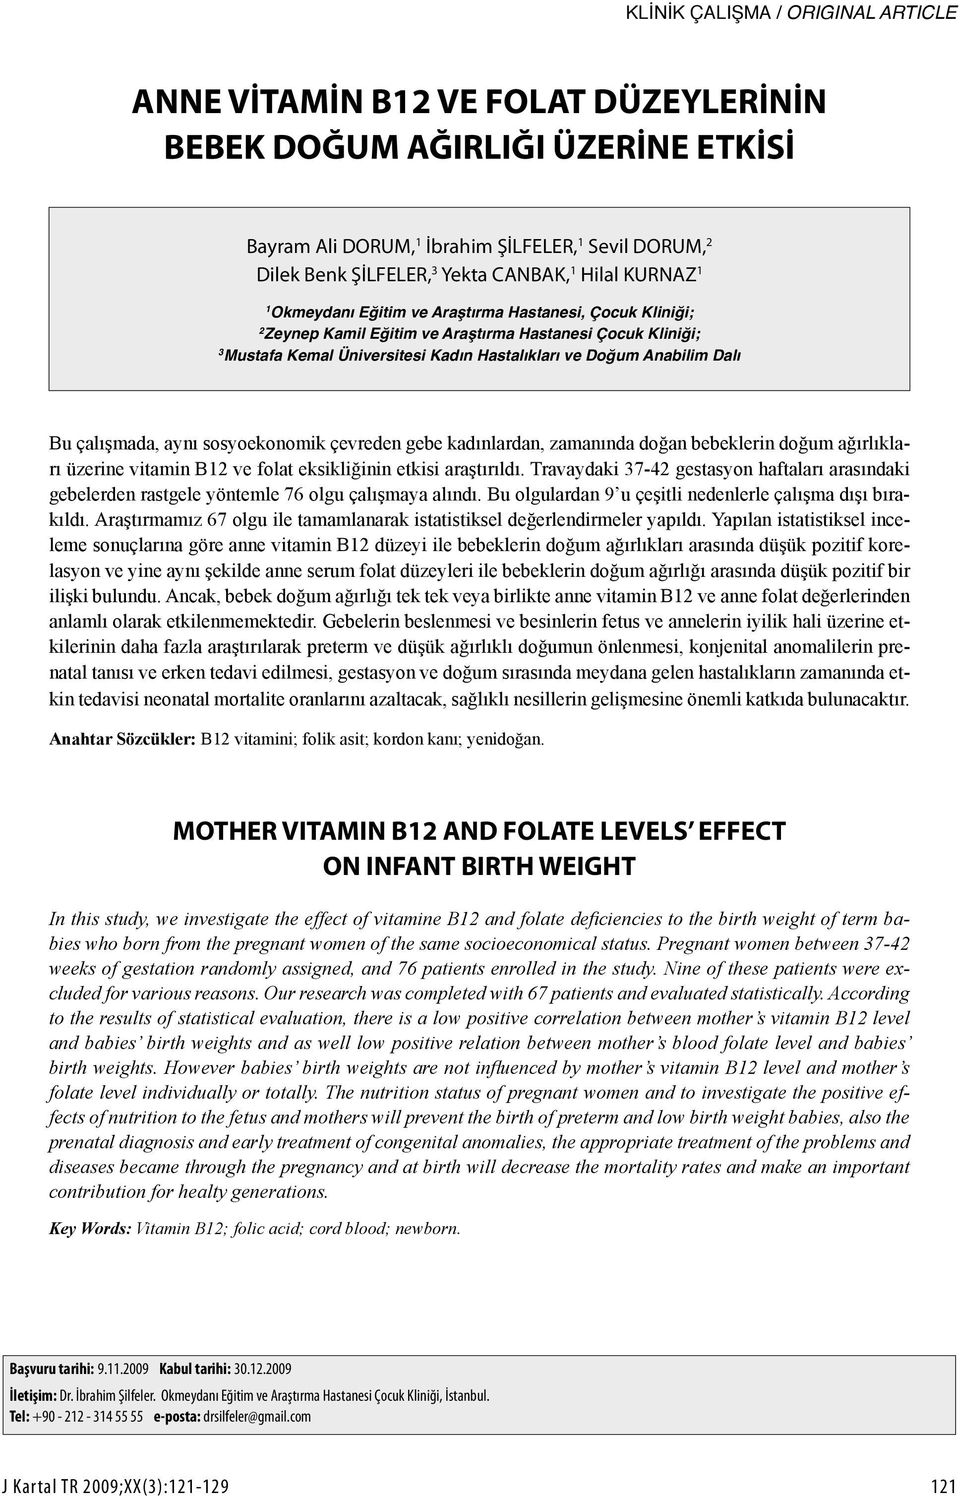 Anabilim Dalı Bu çalışmada, aynı sosyoekonomik çevreden gebe kadınlardan, zamanında doğan bebeklerin doğum ağırlıkları üzerine vitamin B12 ve folat eksikliğinin etkisi araştırıldı.